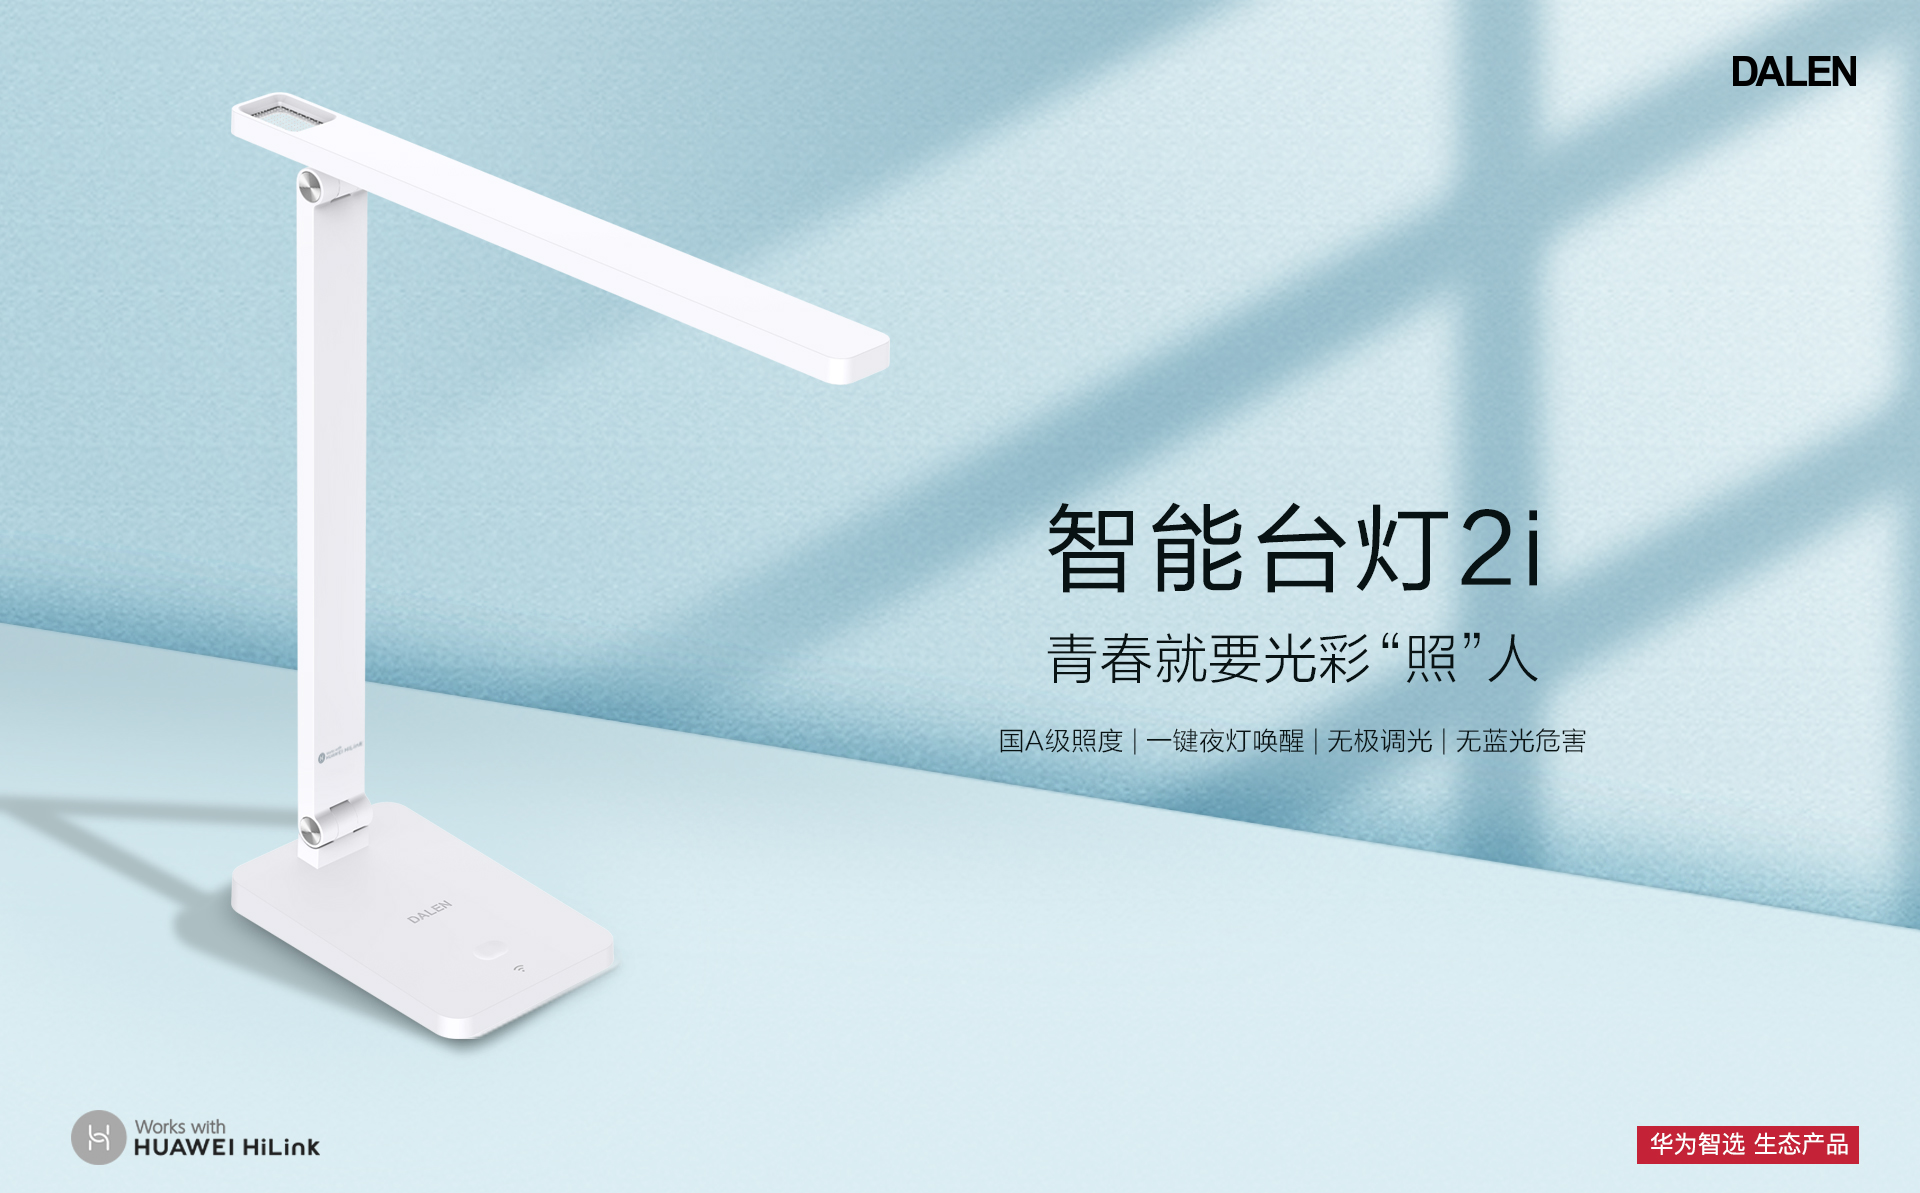 iHuawei स्मार्ट डेरन स्मार्ट डेस्क डेस्क लैम्प २ आई